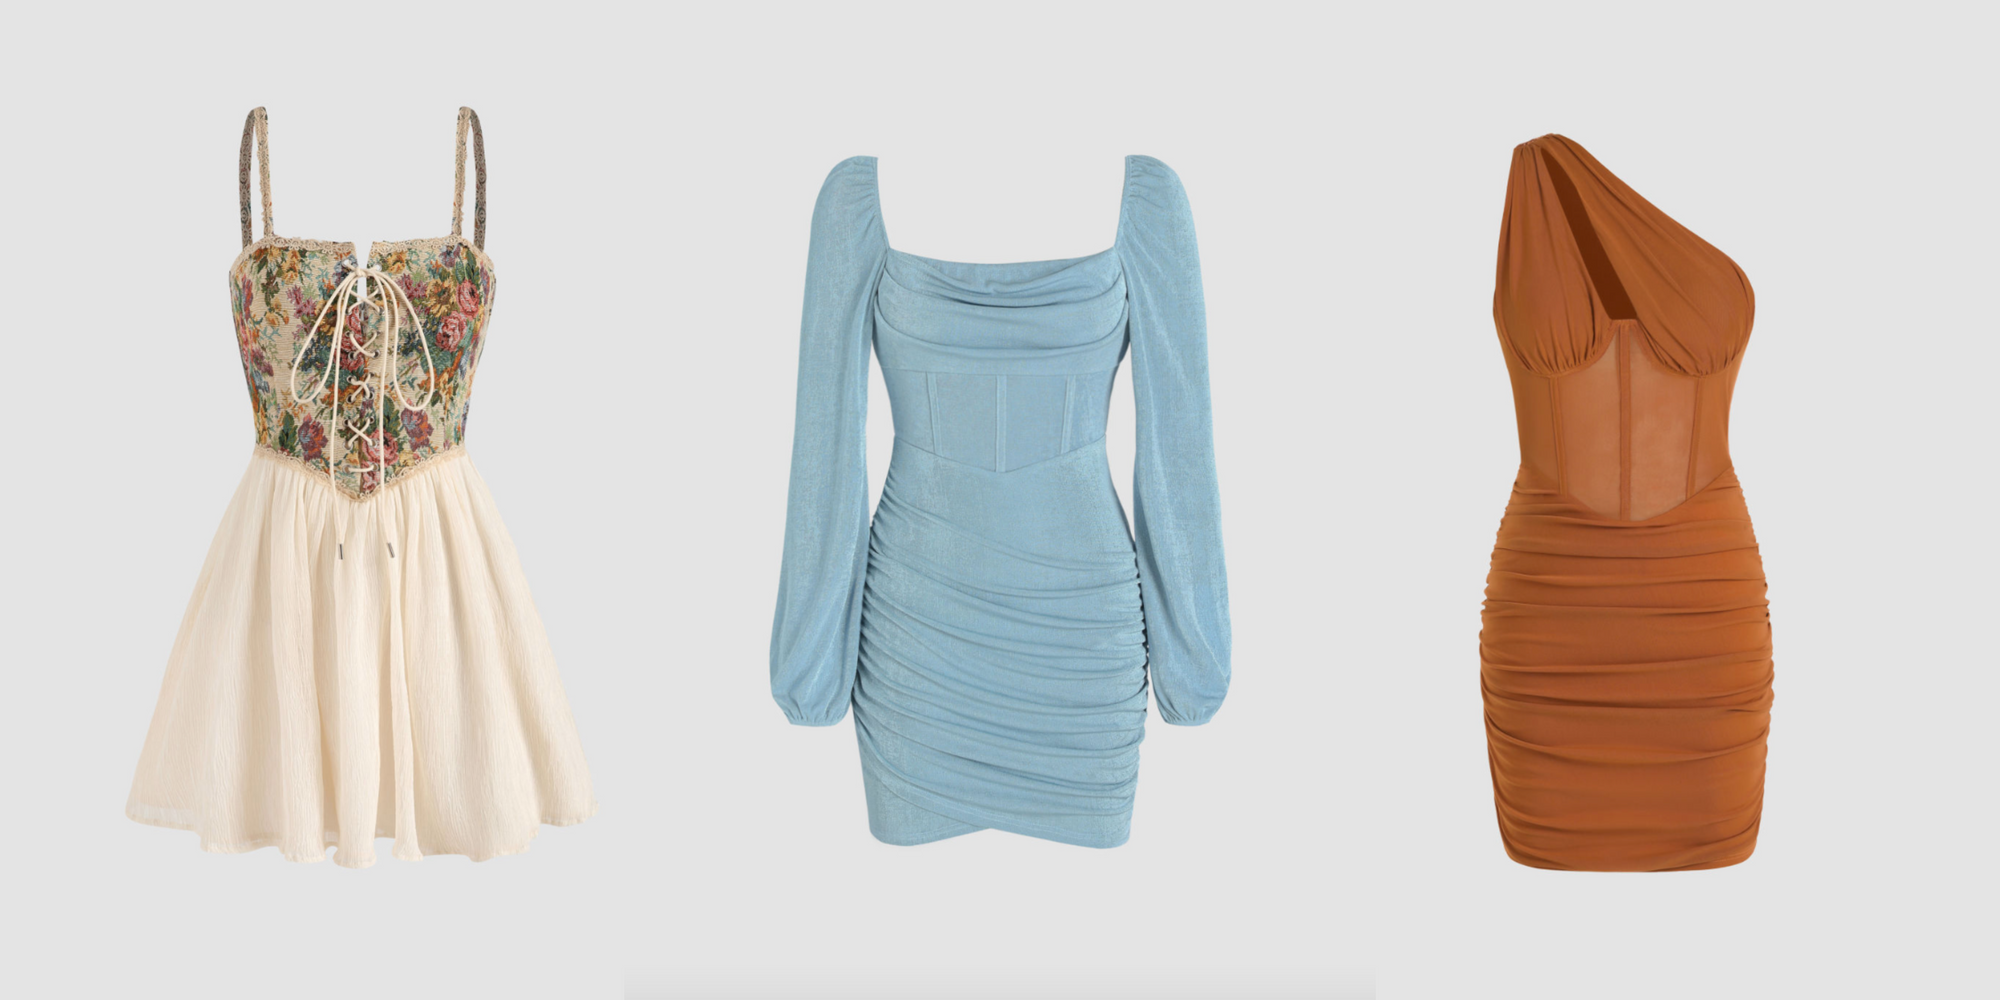 Shop The Trend: Women's Corset Dresses